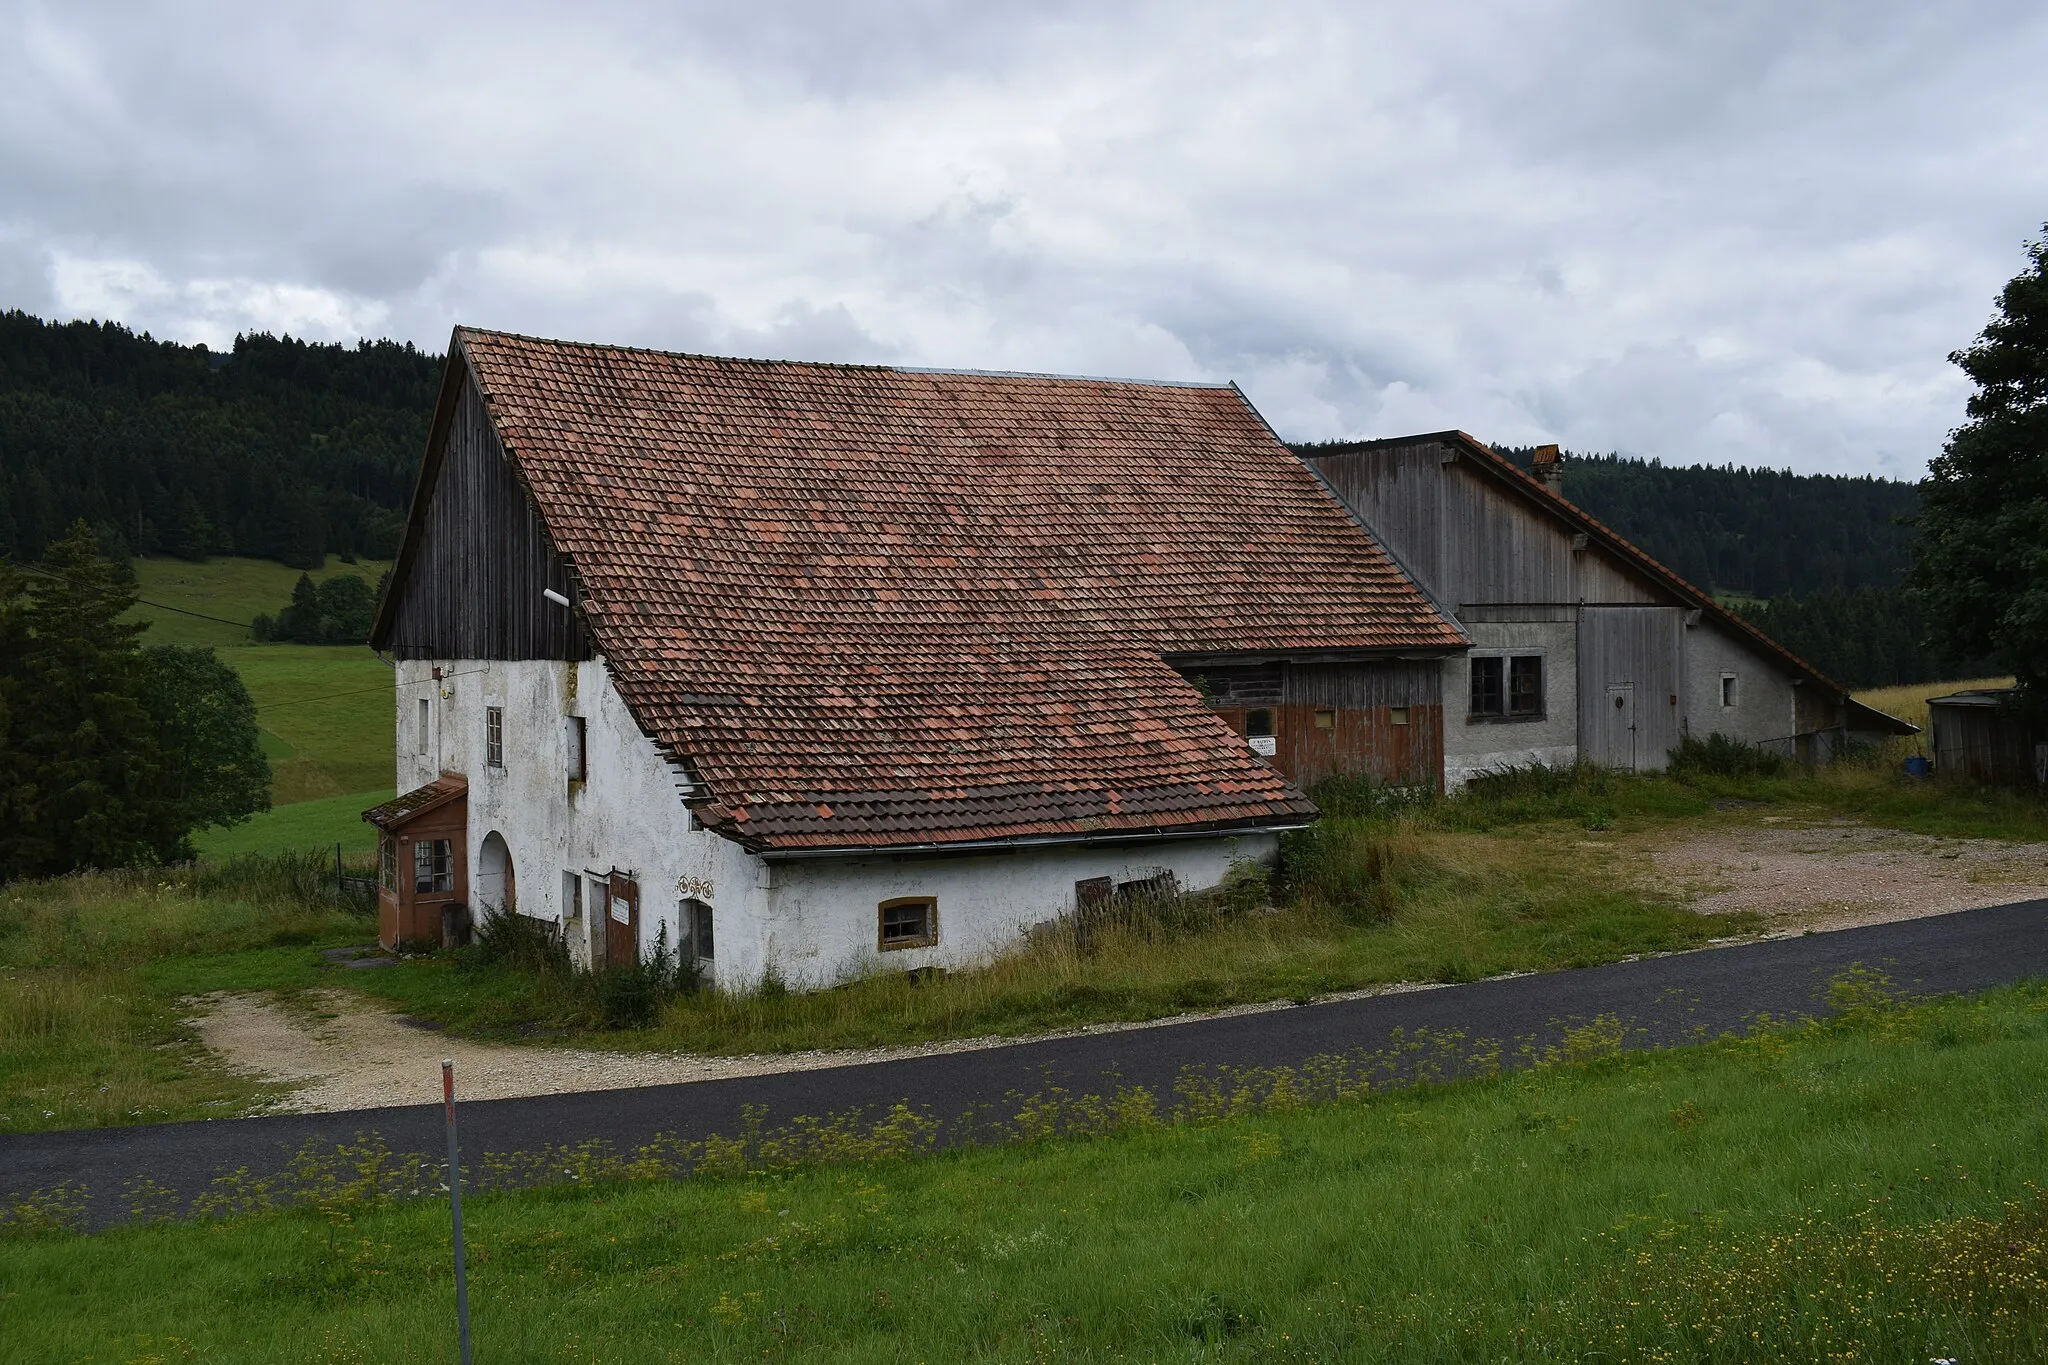 Photo showing: Vue du village de L'Auberson, dans la commune de Sainte-Croix (canton de Vaud, en Suisse).